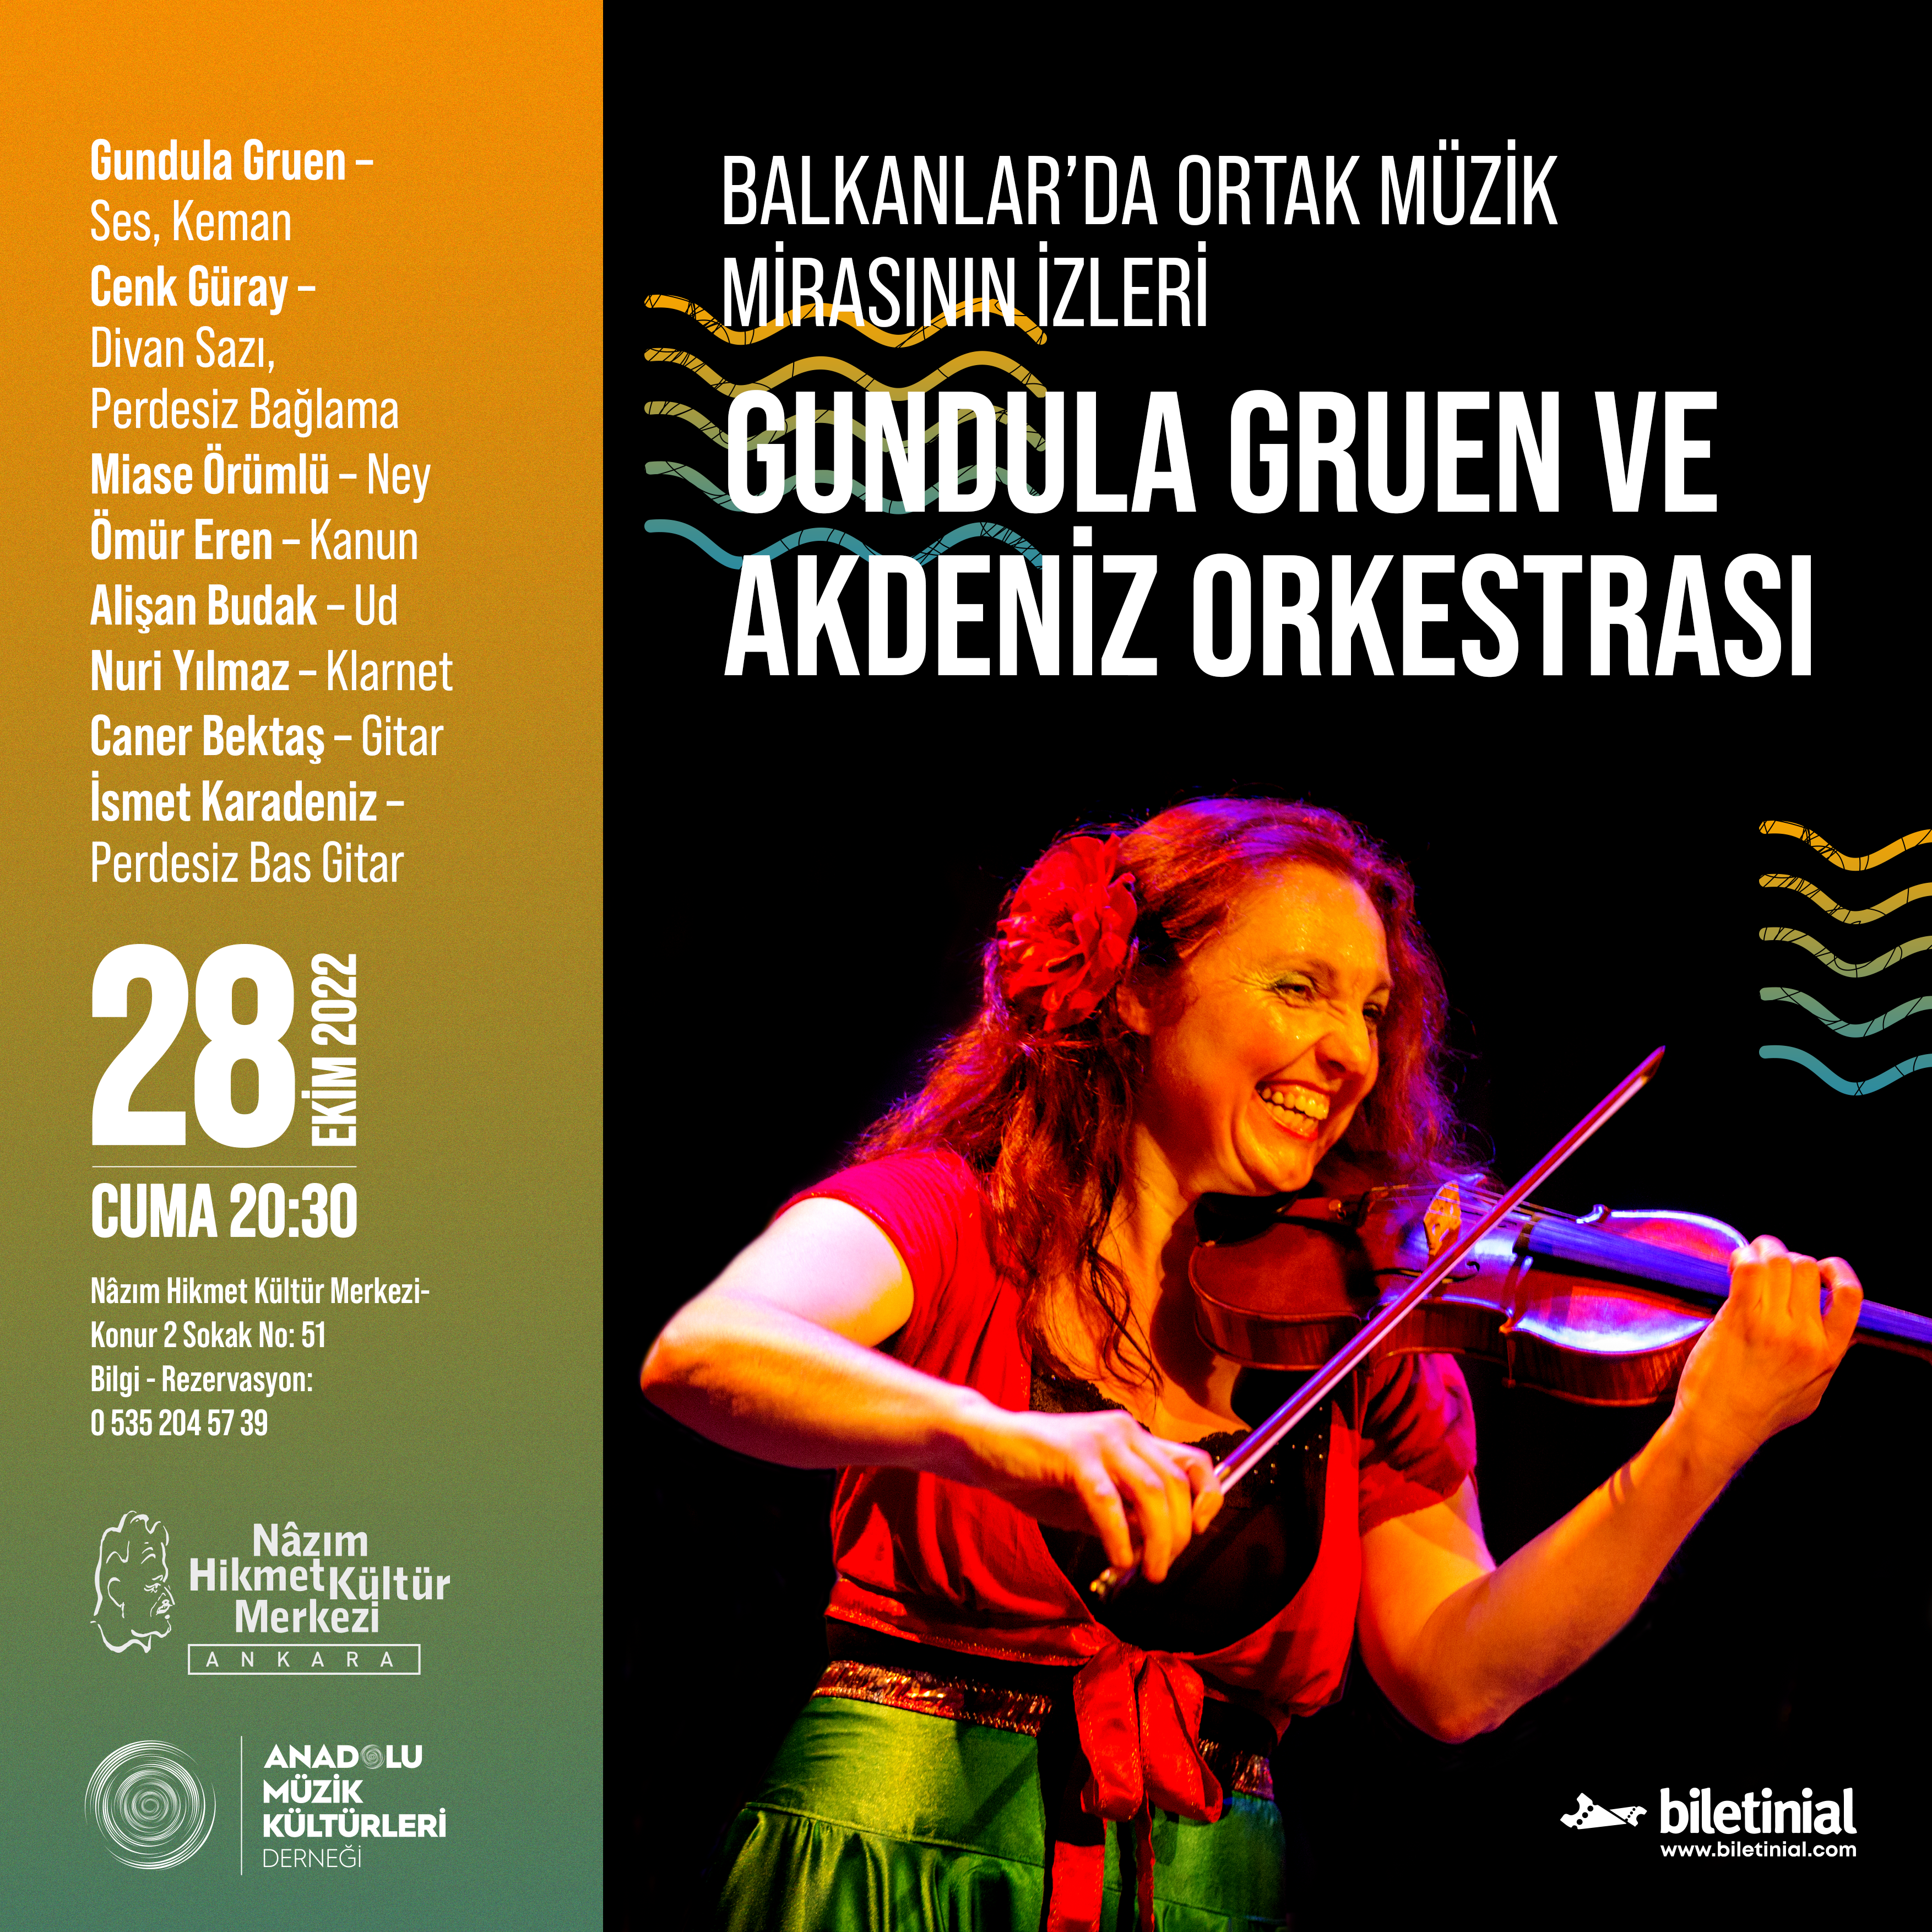 Balkanlar’da Ortak Müzik Mirasının İzleri – Gundula Gruen ve Akdeniz Orkestrası